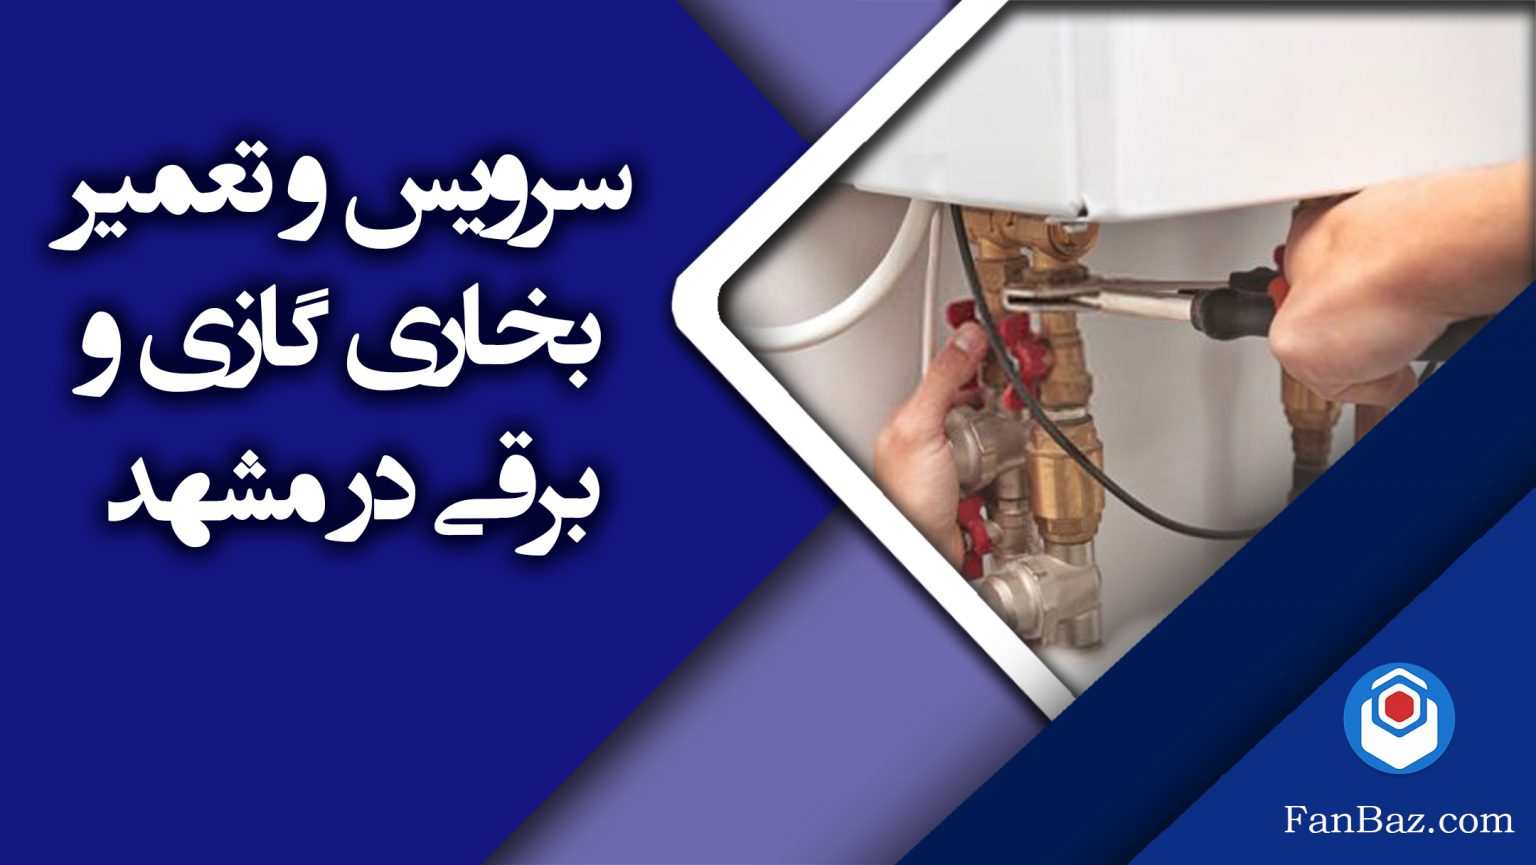 سرویس و تعمیر بخاری برقی و گازی در مشهد